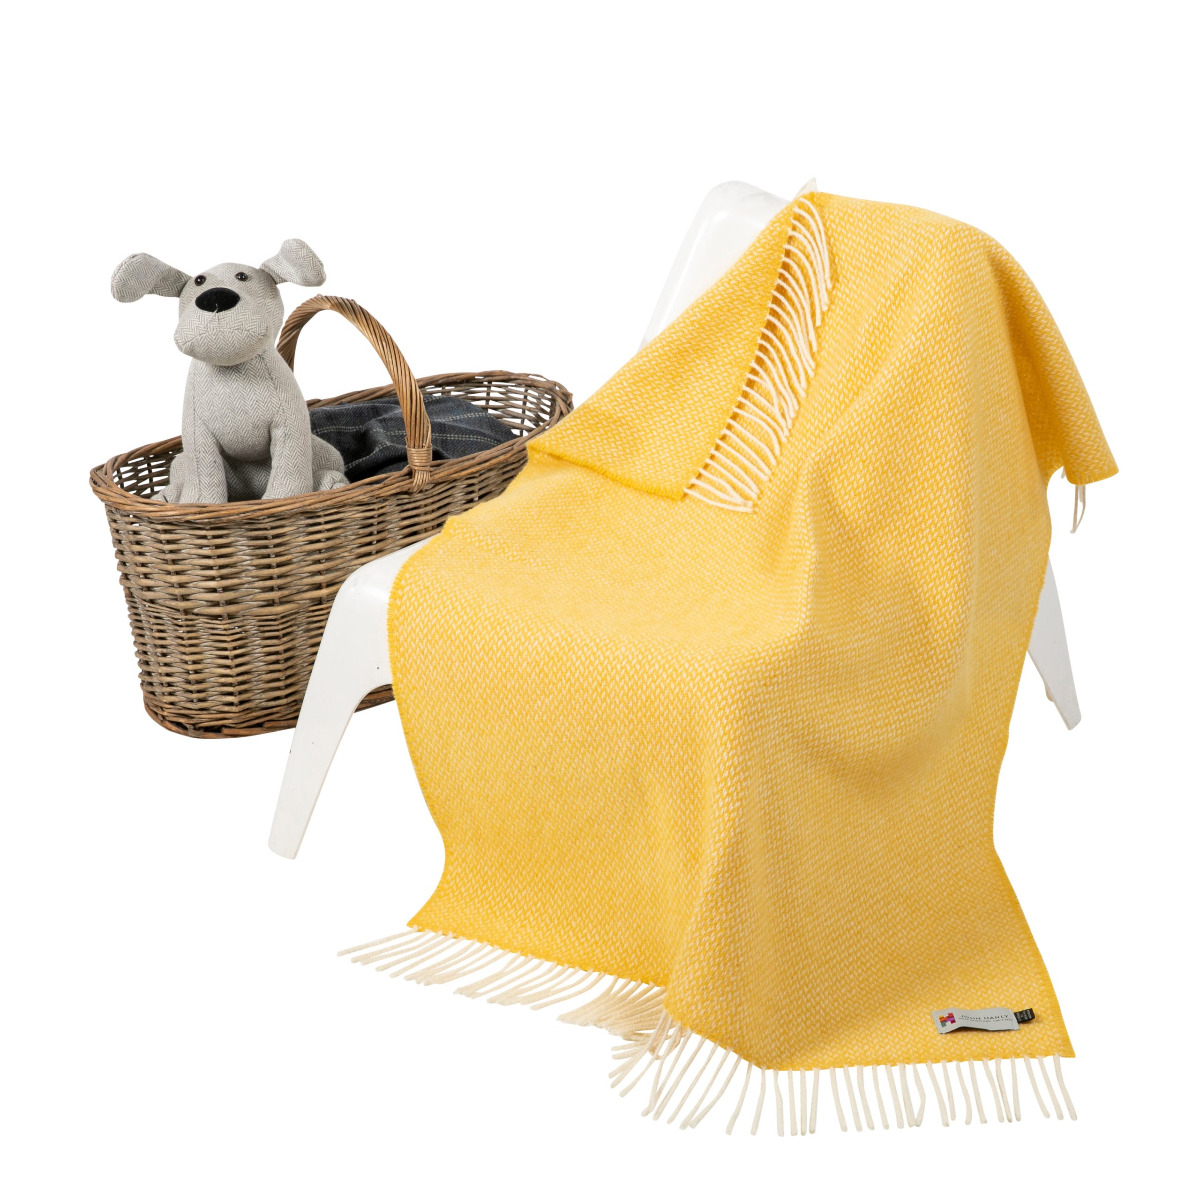 Irish Cashmere Baby Blanket Baby Yellow Herringbone in a presentation box.